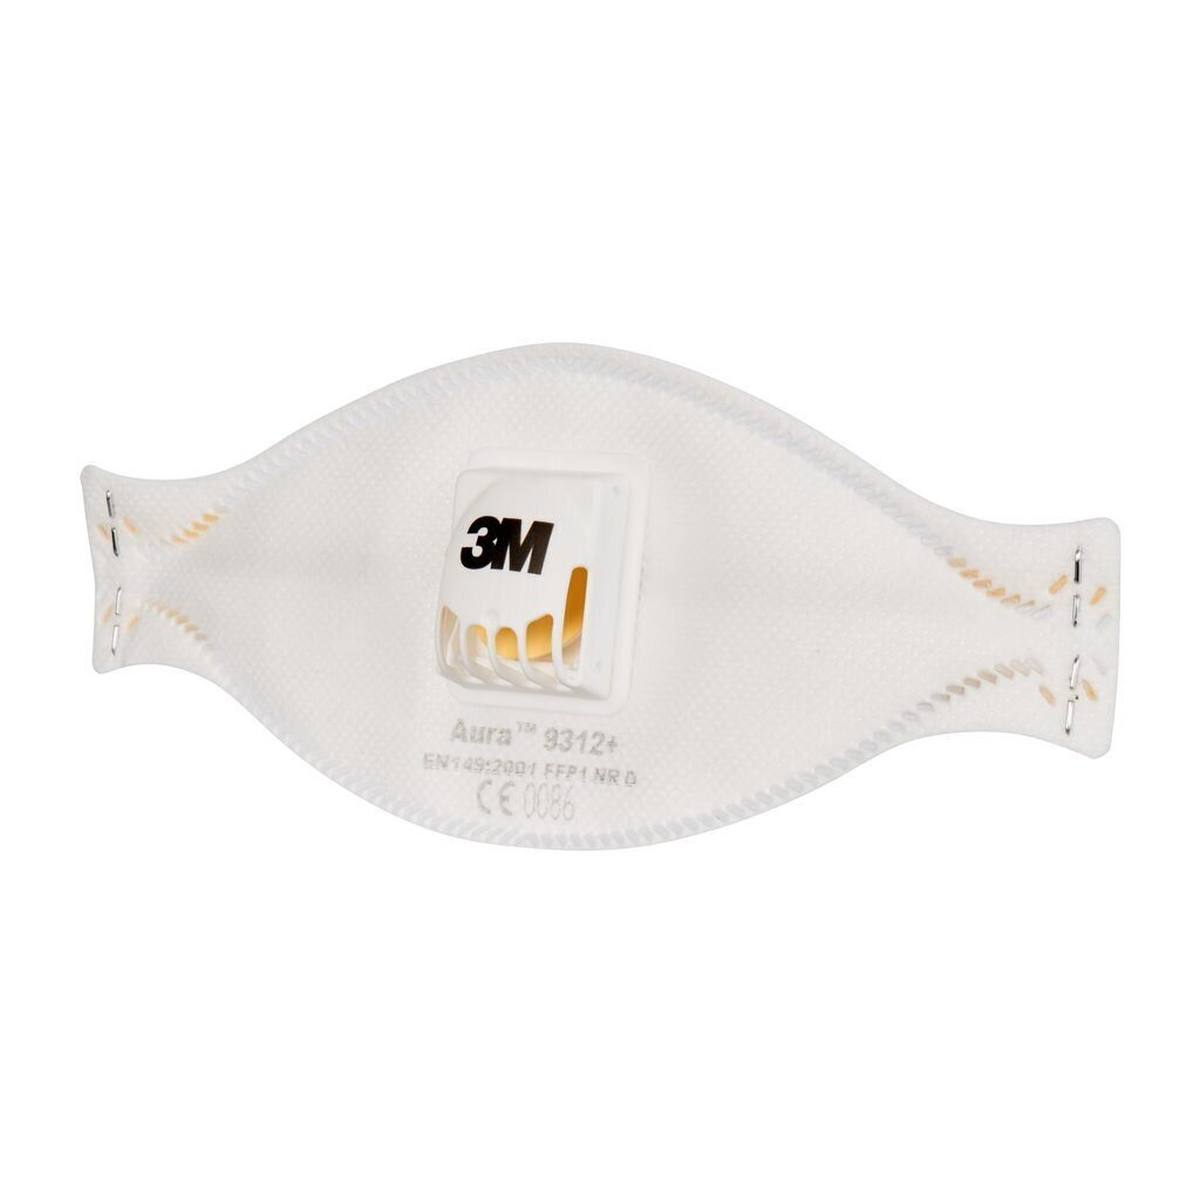 3M 9312+ Aura Masque de protection respiratoire FFP1 avec valve d'expiration Cool-Flow, jusqu'à 4 fois la valeur limite (emballage individuel hygiénique)